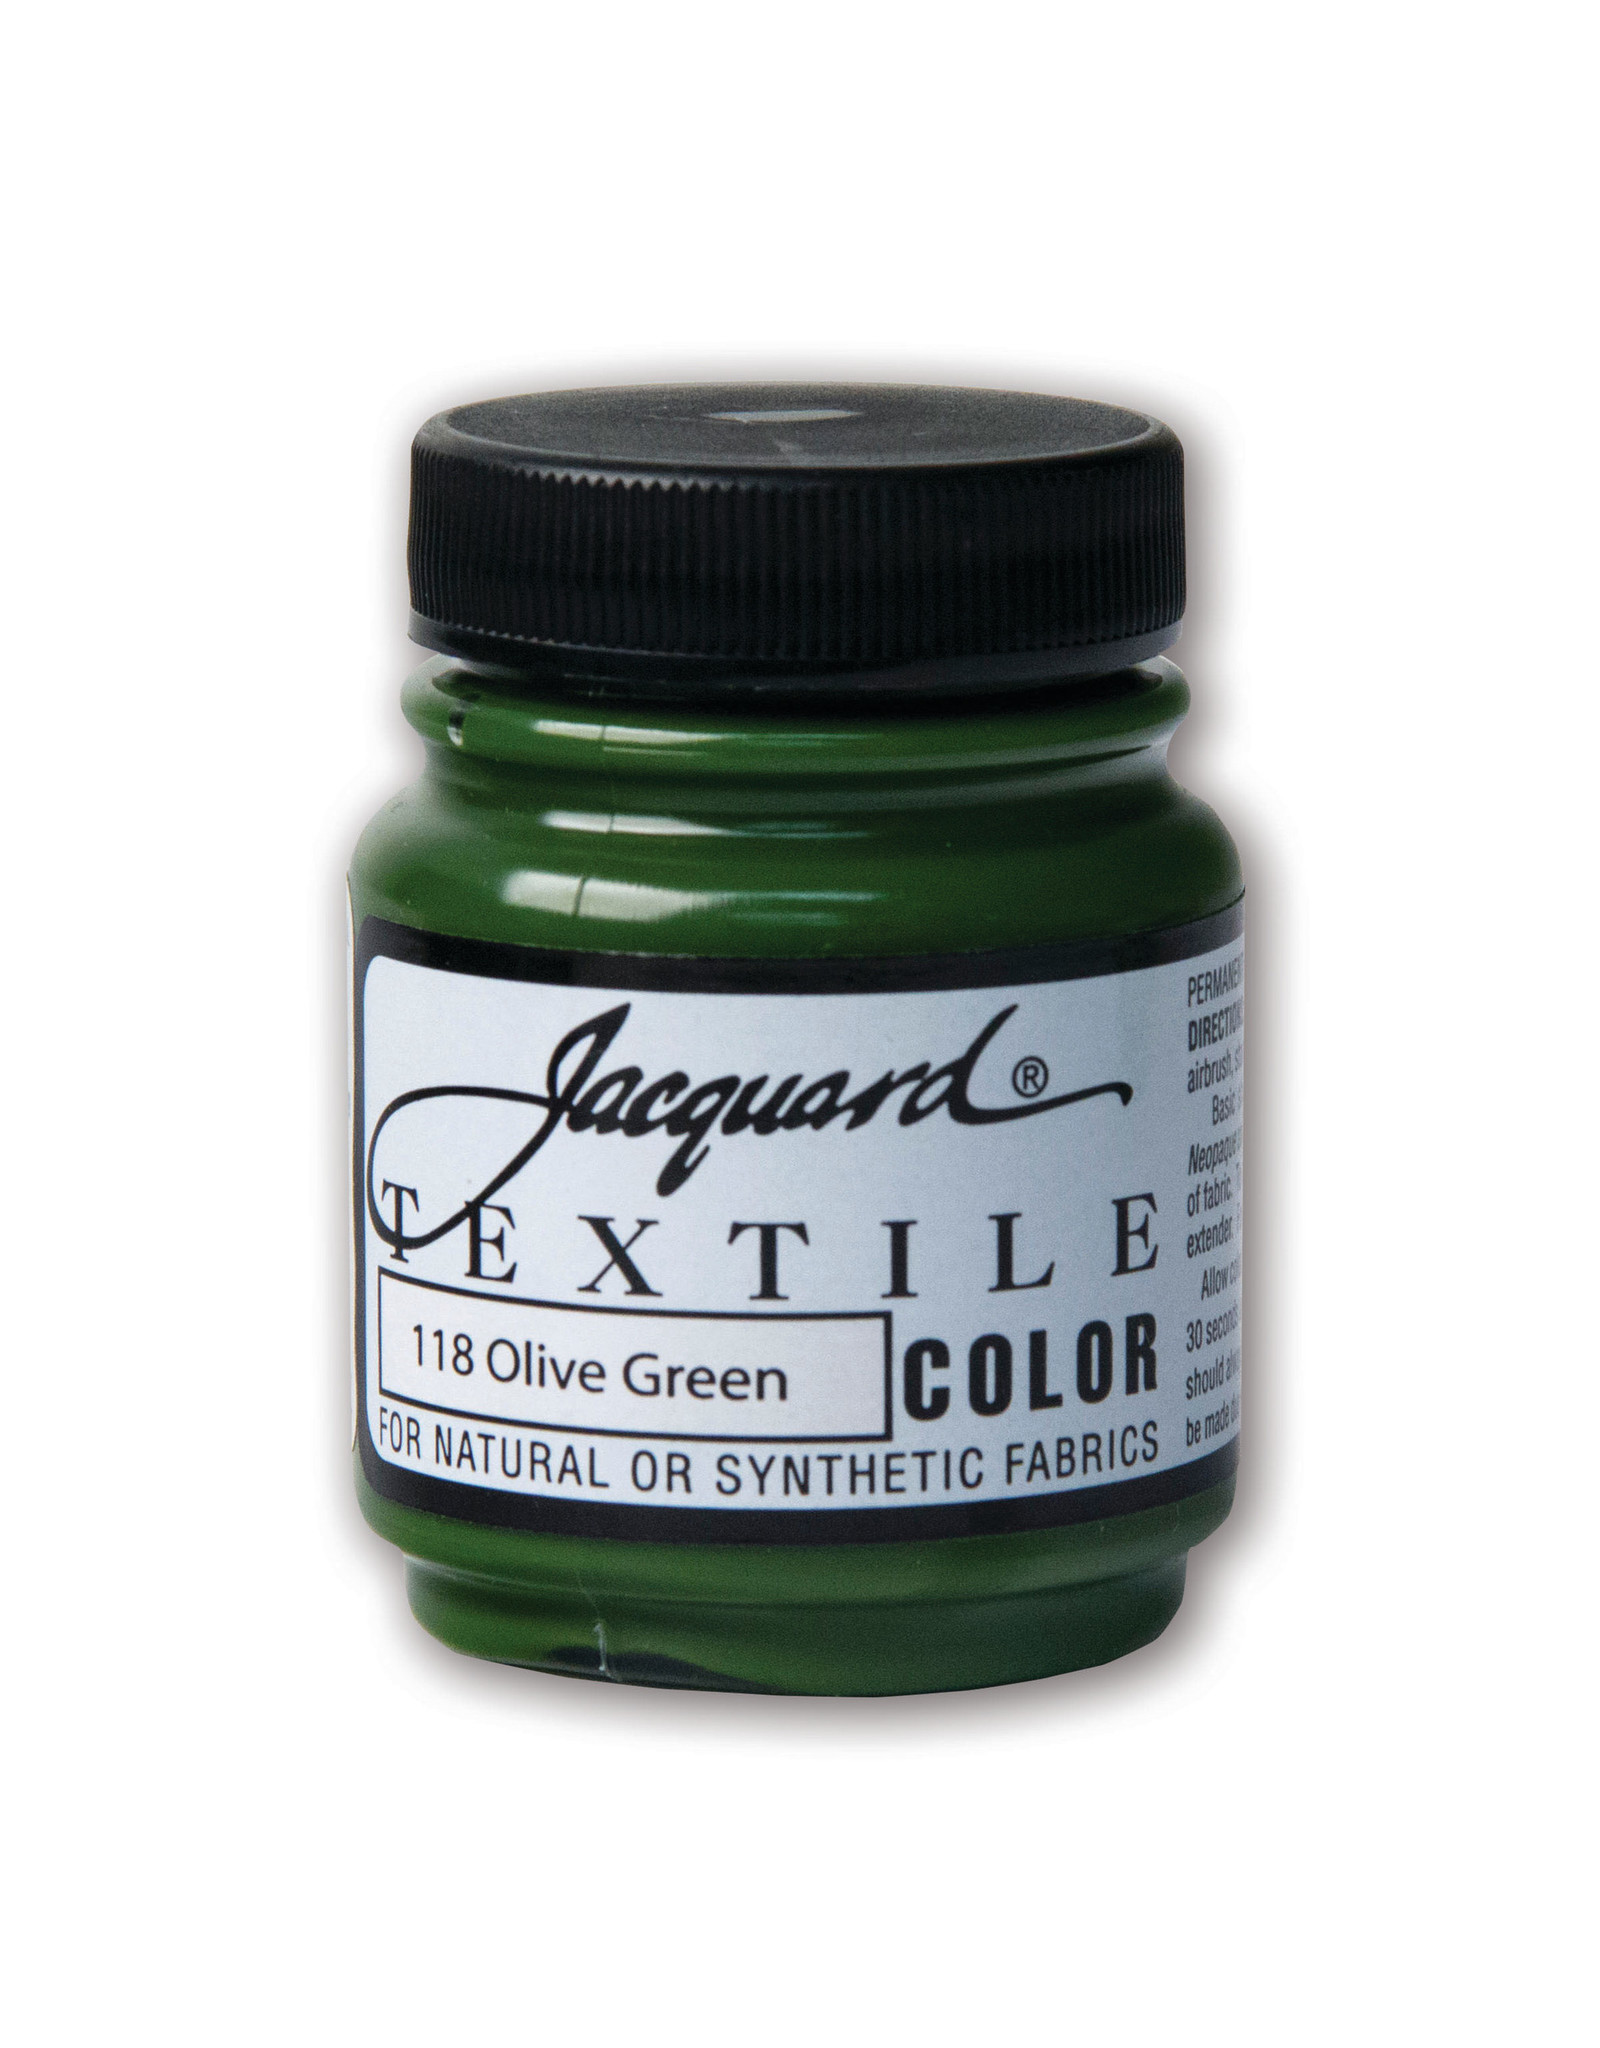 Jacquard Jacquard Textile Color, #118 Olive Green